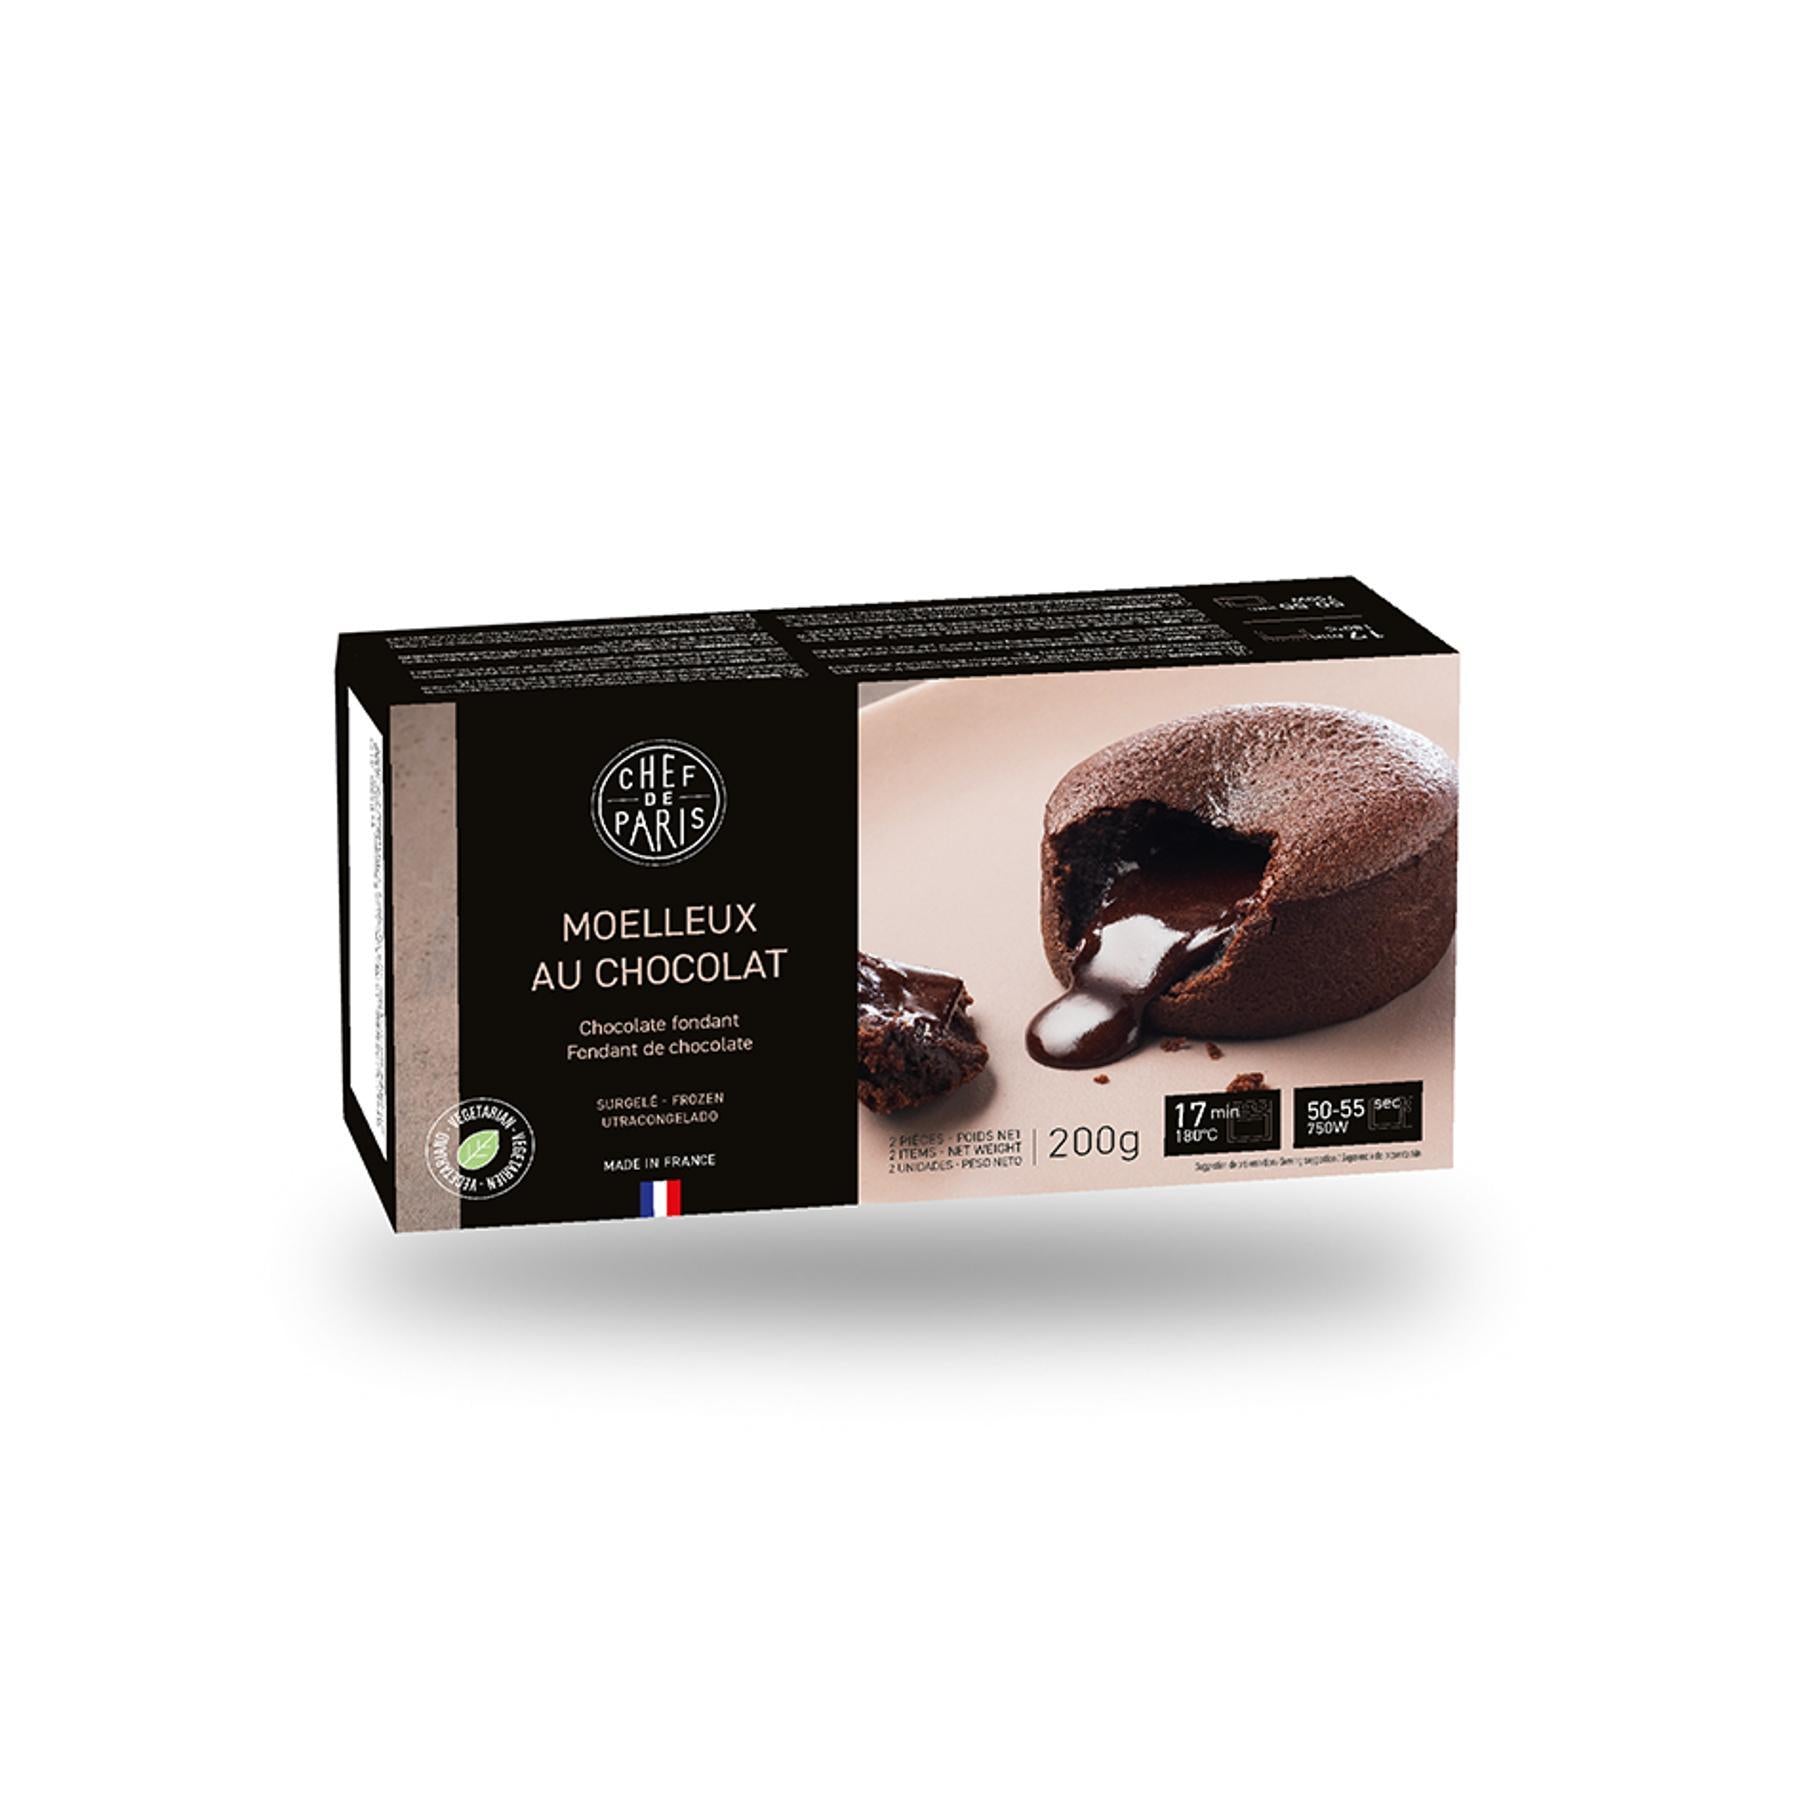 Fondant au chocolat - rians - 220g (2 unités, 2 x (60 g + 50 g))